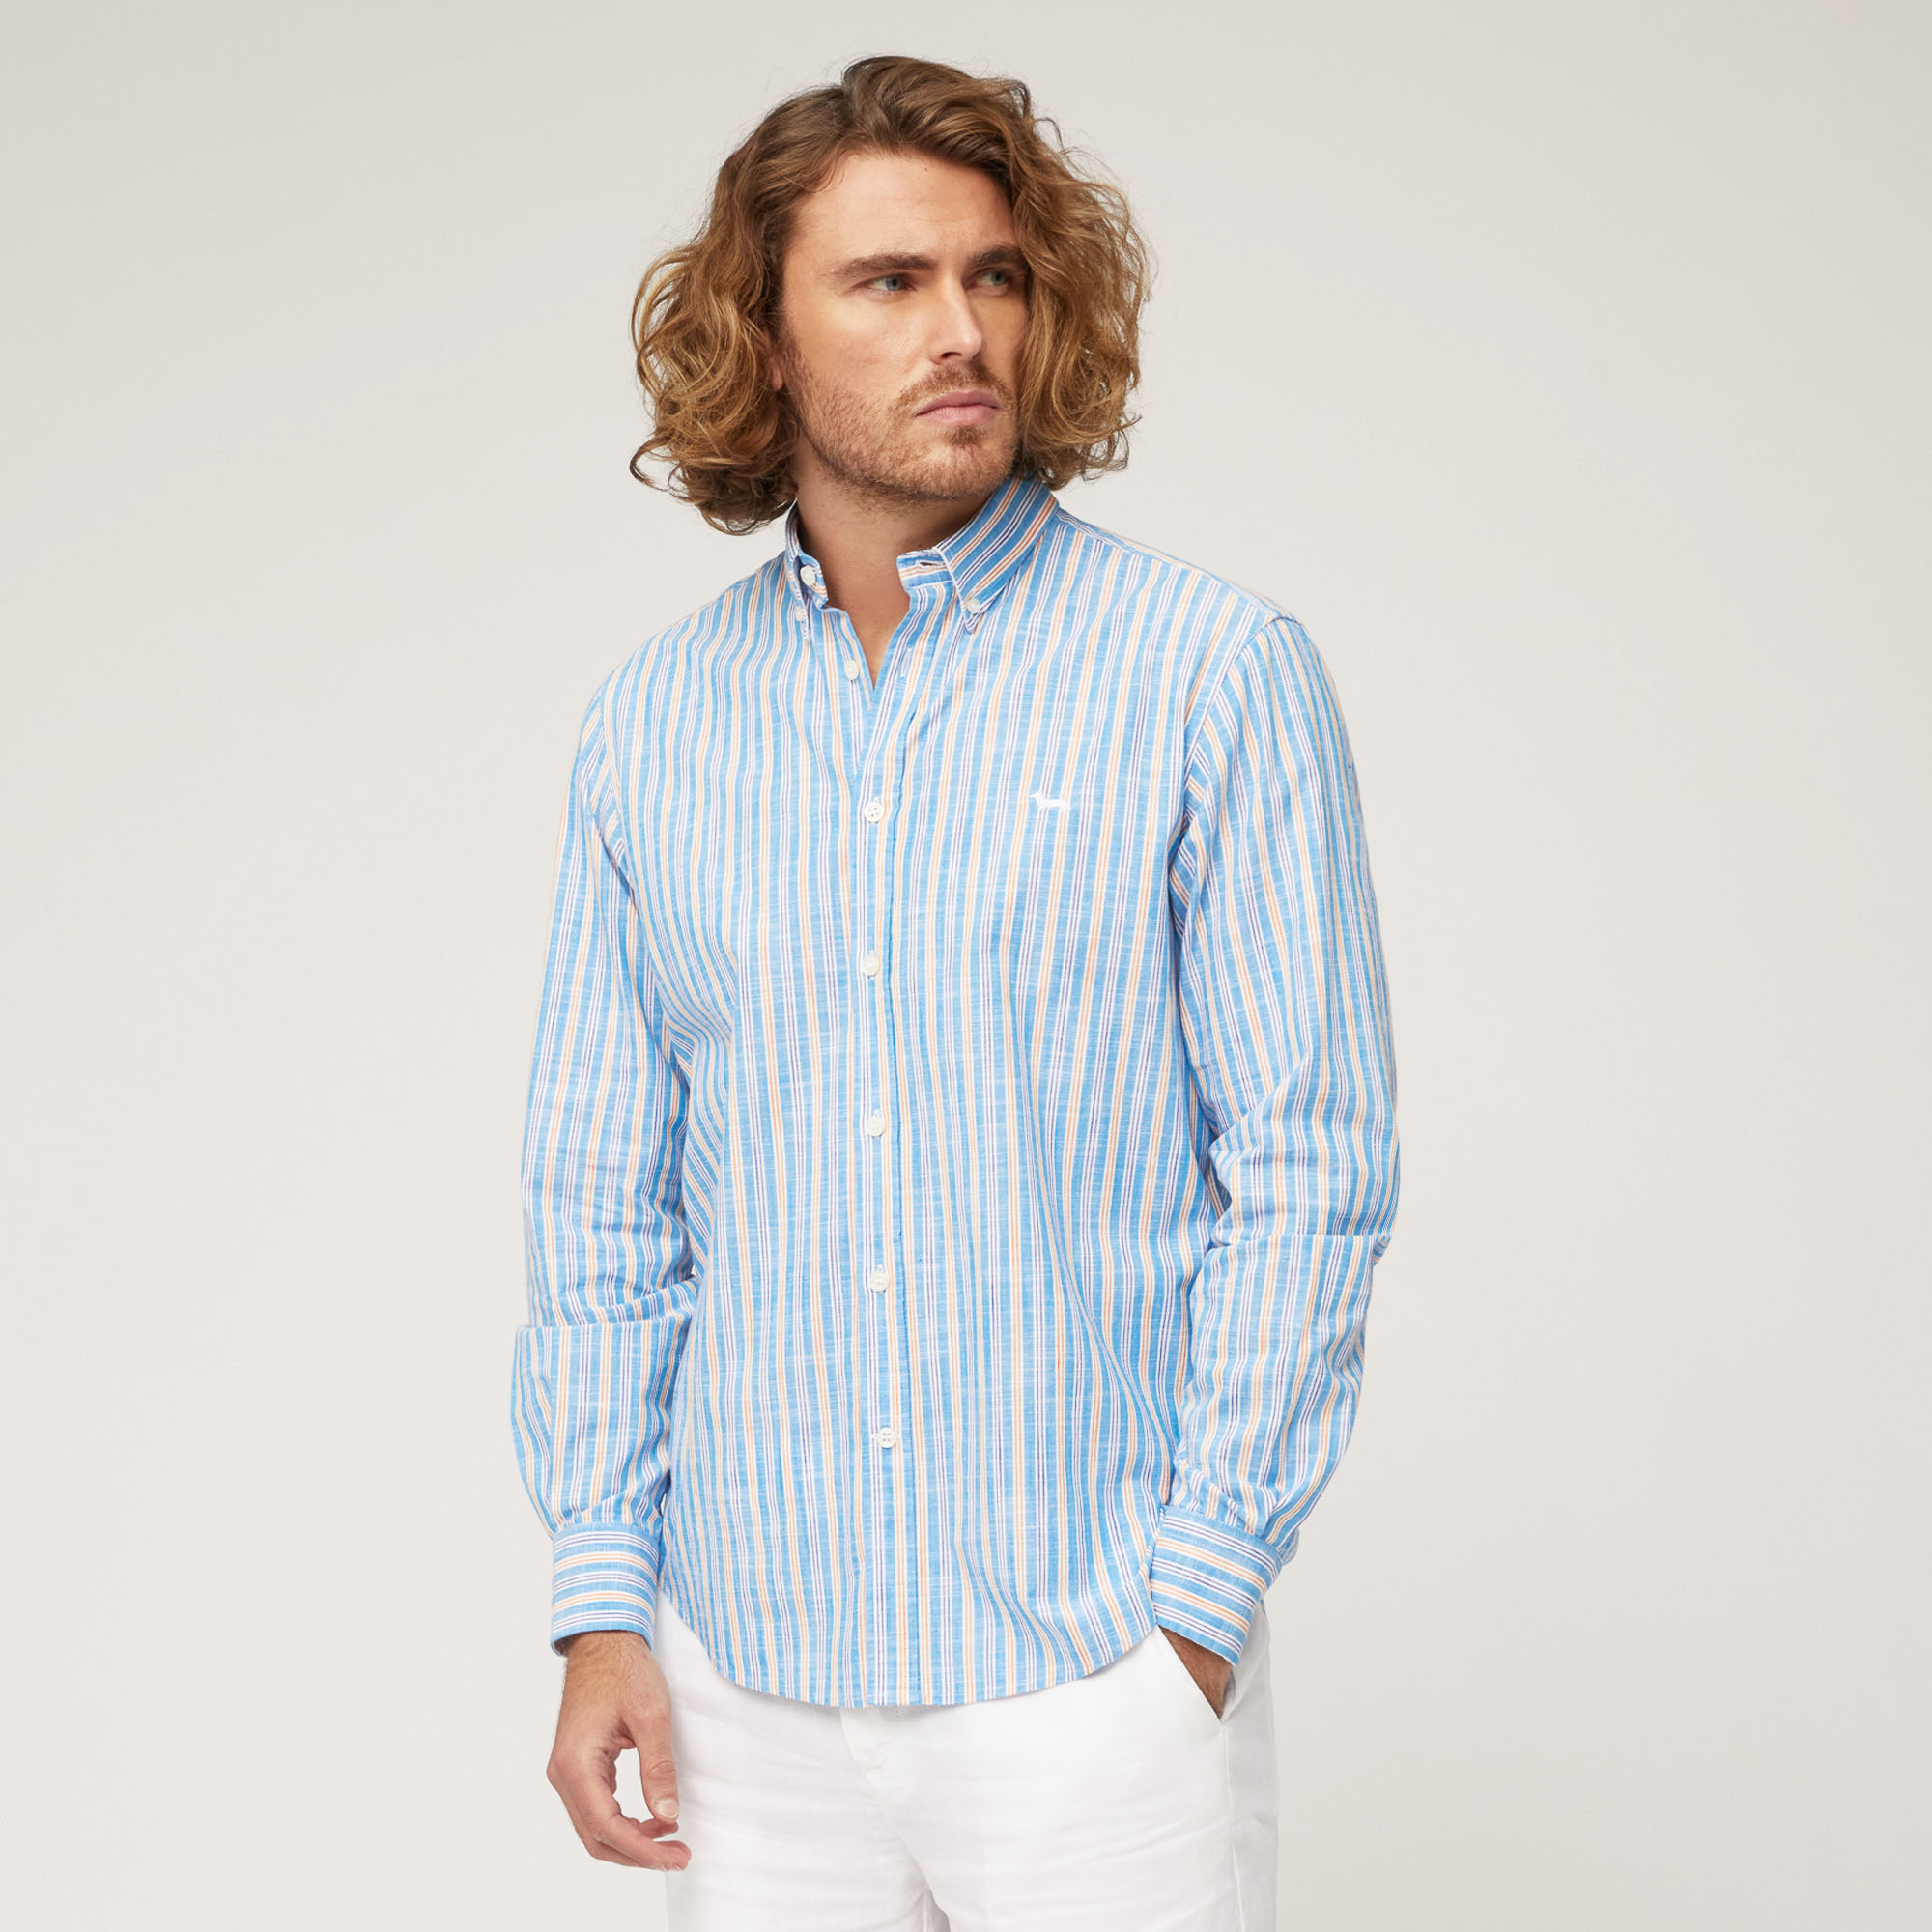 Camicia In Cotone Fiammato A Righe, Azzurro, large image number 0